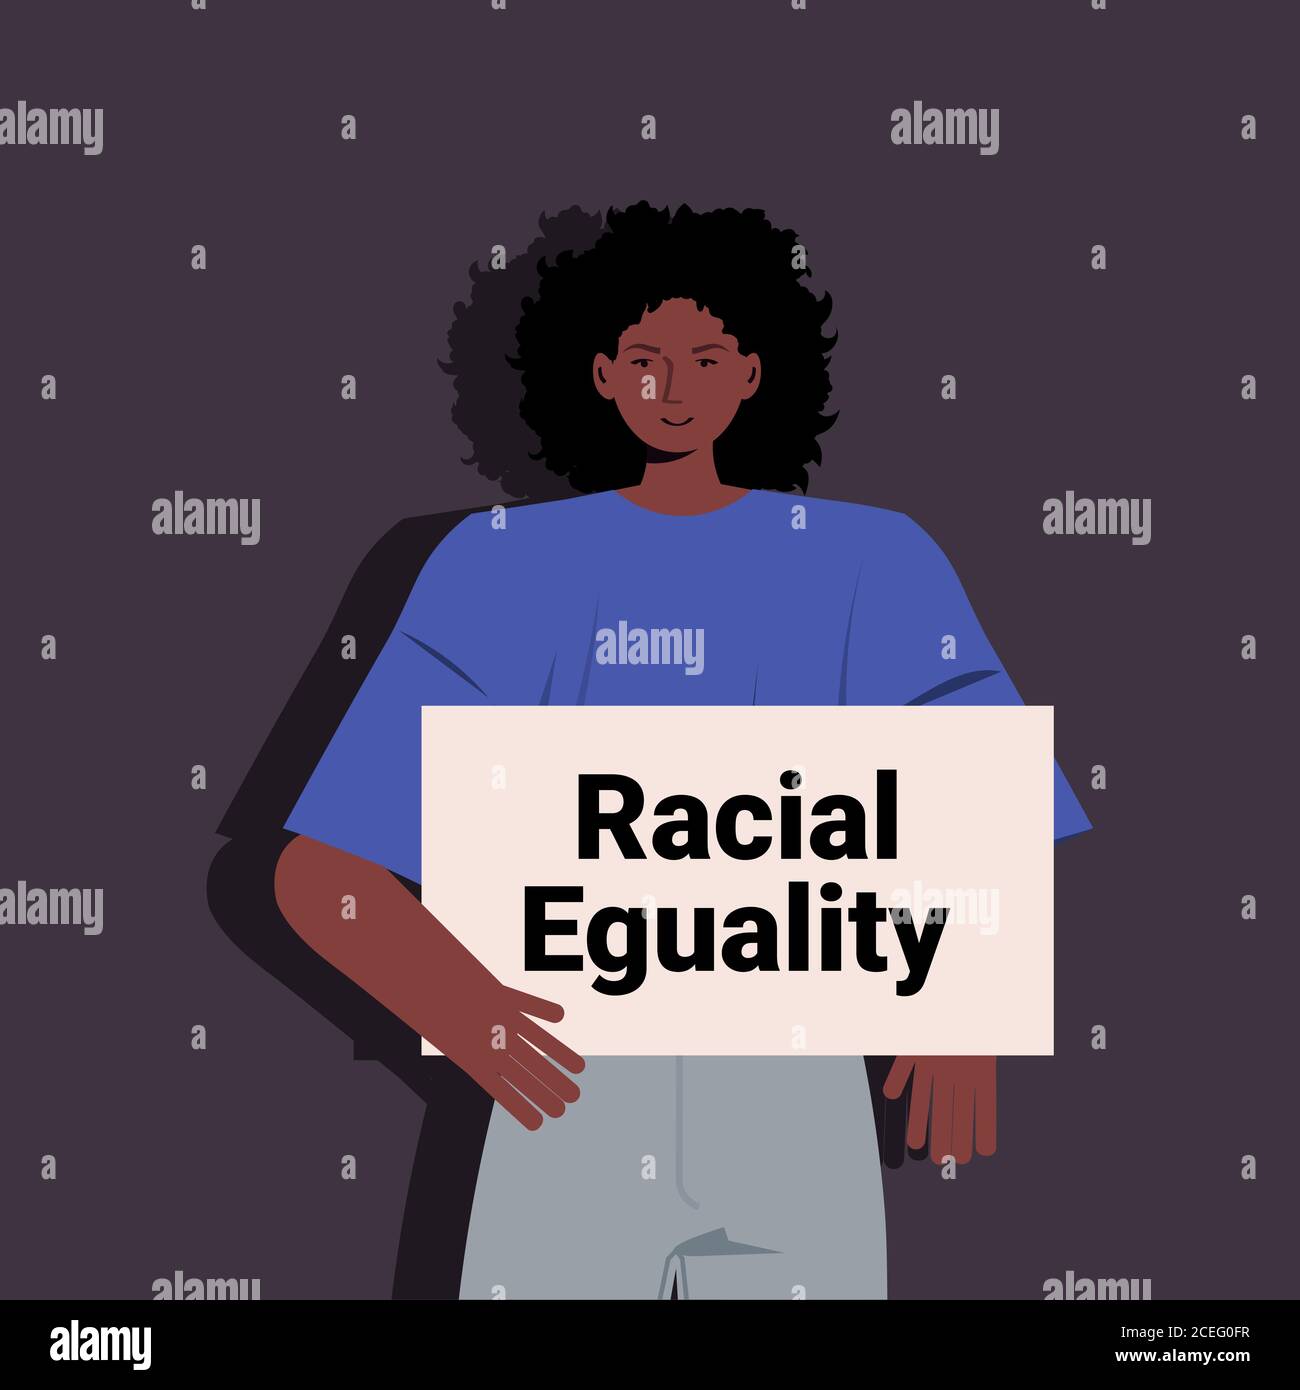 attivista africana-americana che tiene fermo il razzismo manifesto uguaglianza razziale giustizia sociale fermare la discriminazione concetto ritratto illustrazione vettoriale Illustrazione Vettoriale